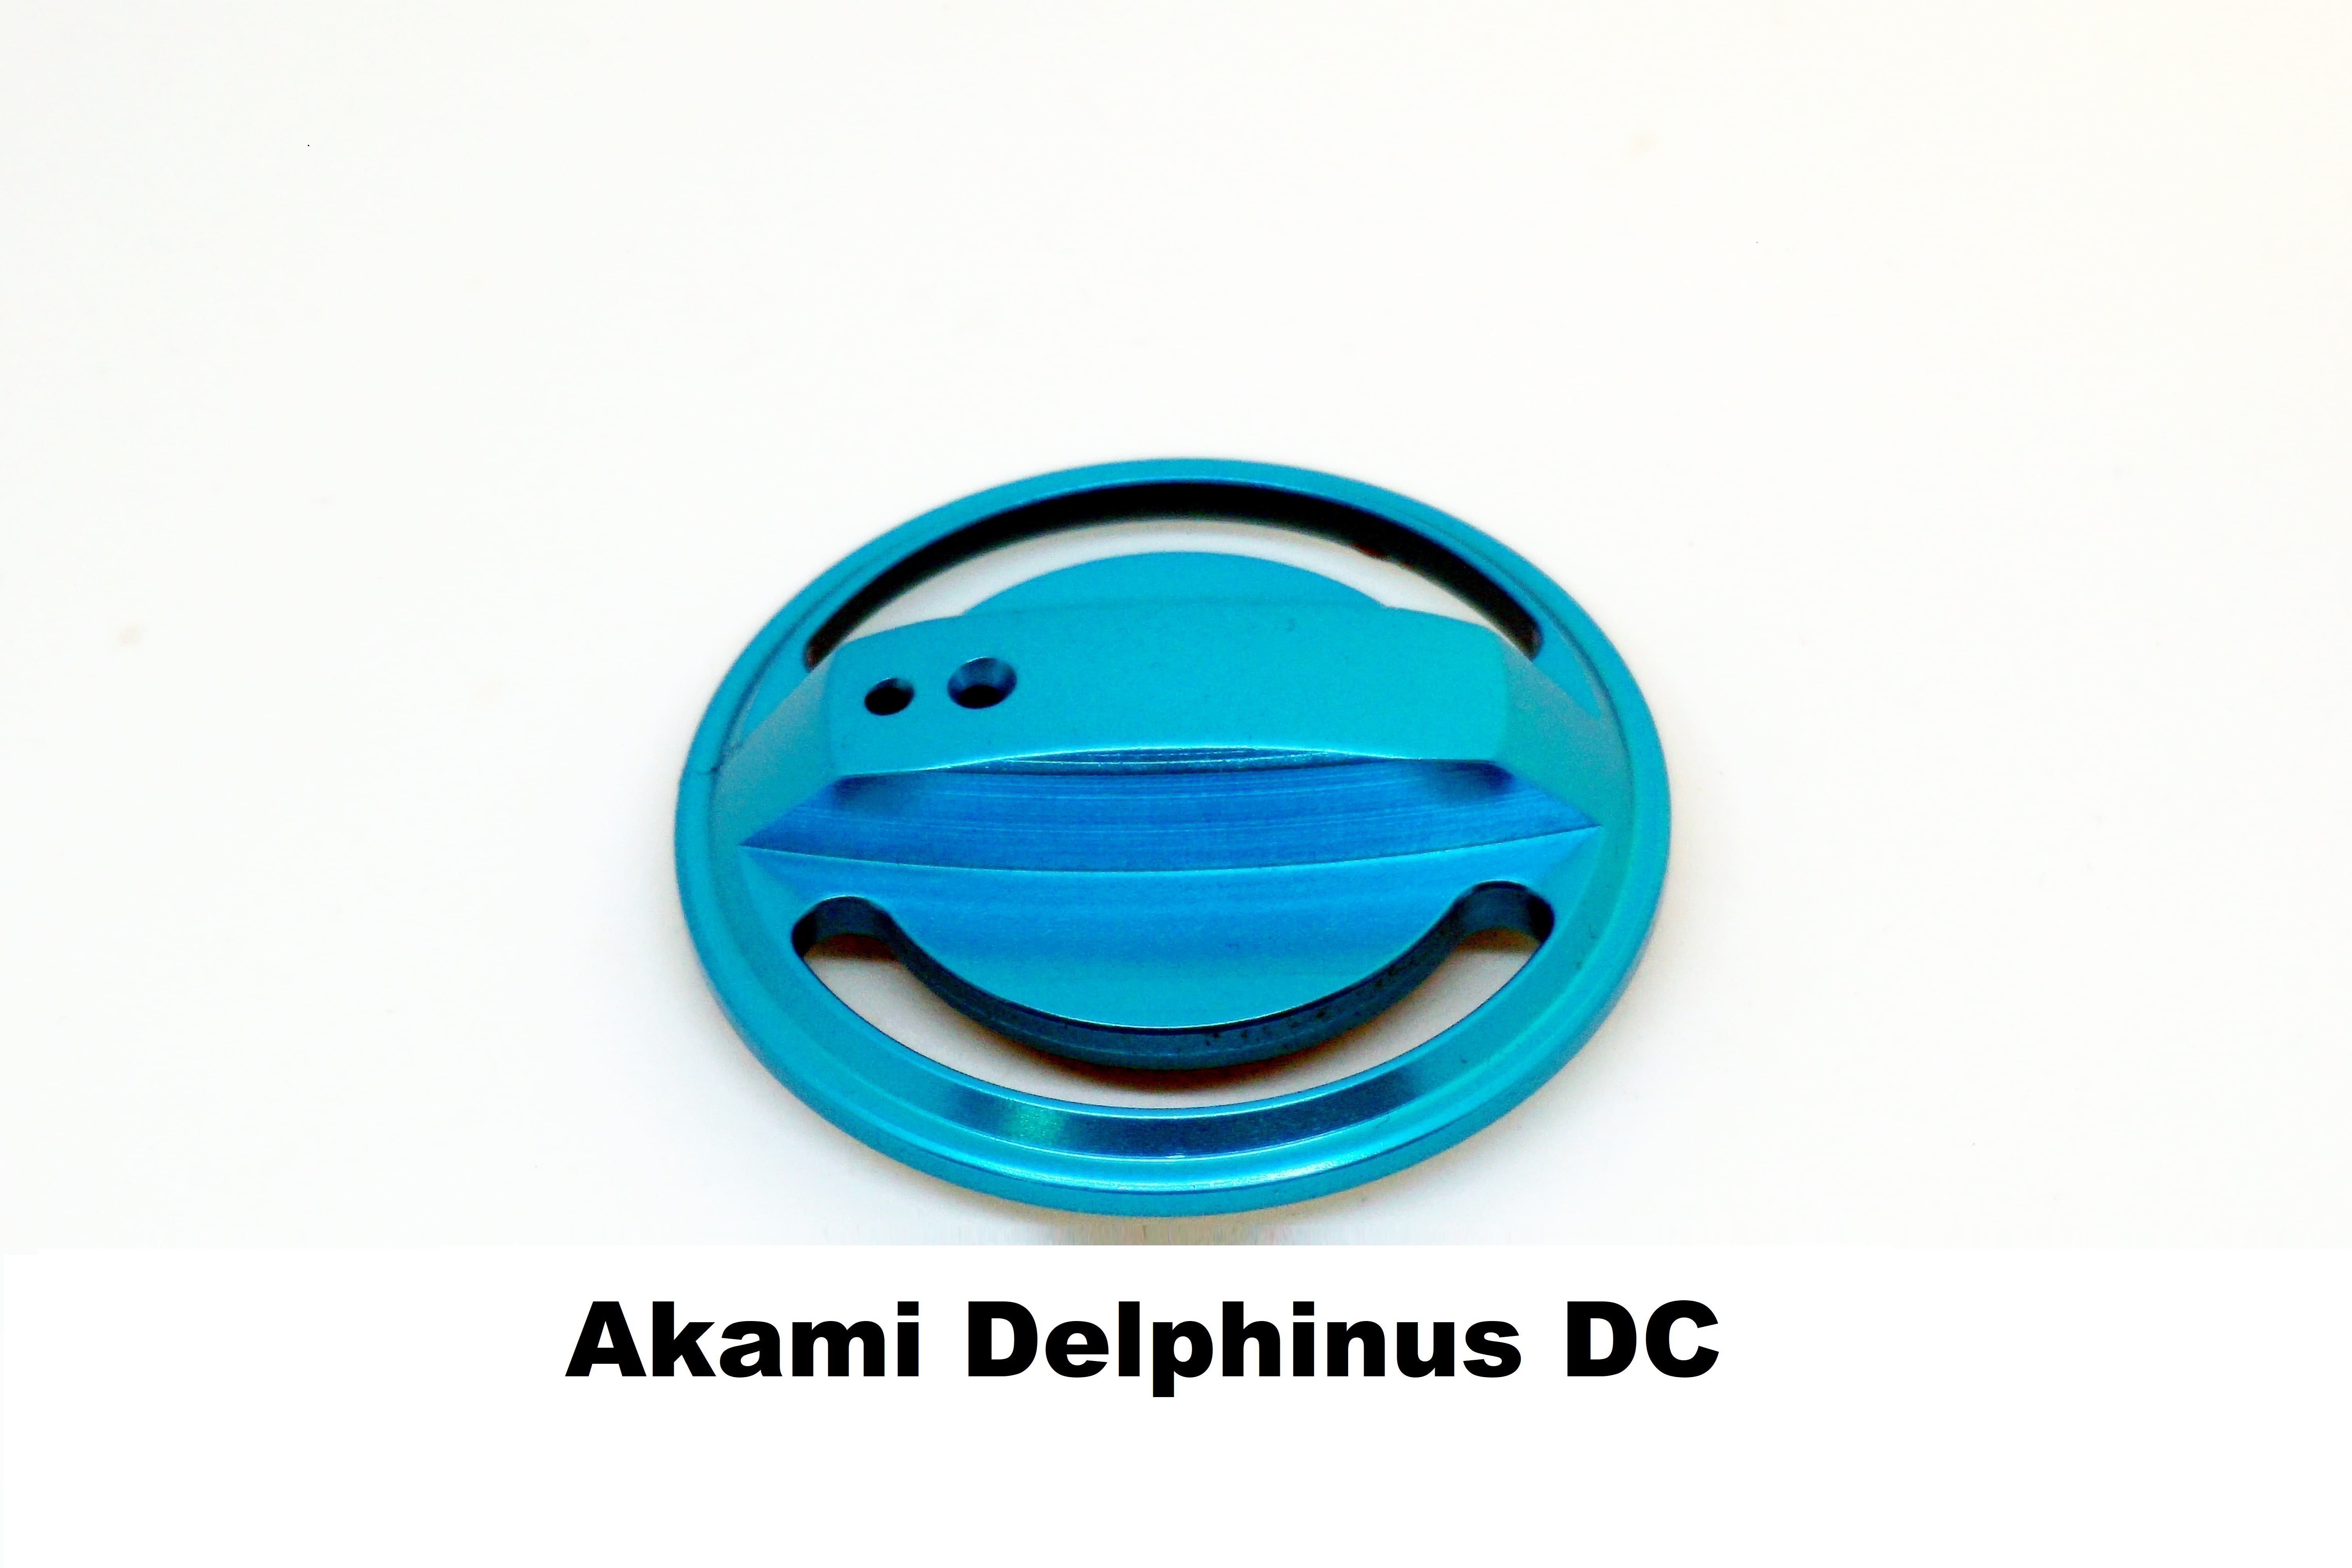 Tapón de Freno Akami Delphinus DC